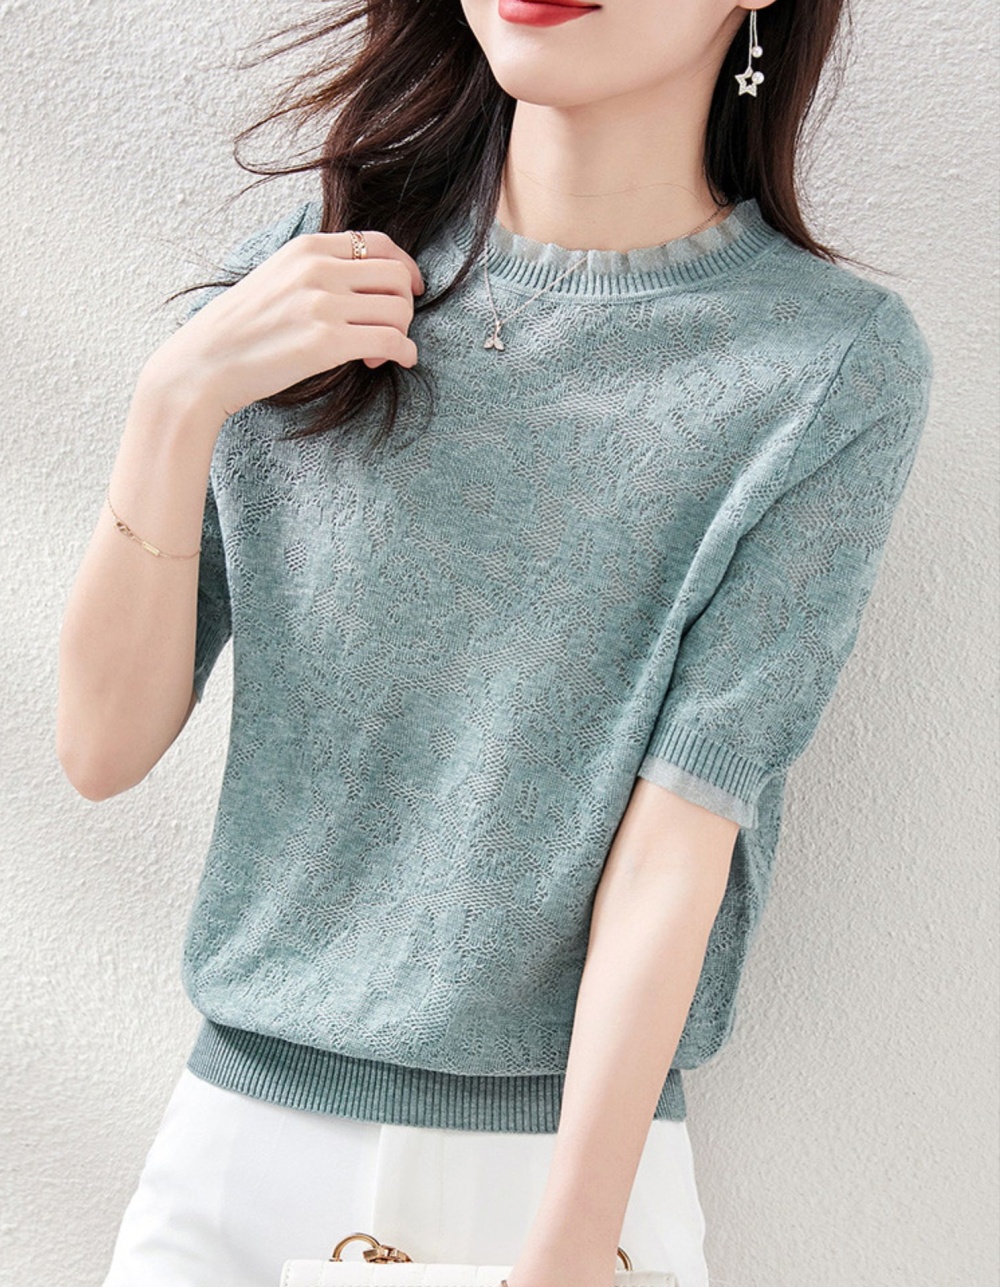 Hollow short sleeve short tops small summer crochet T-shirt